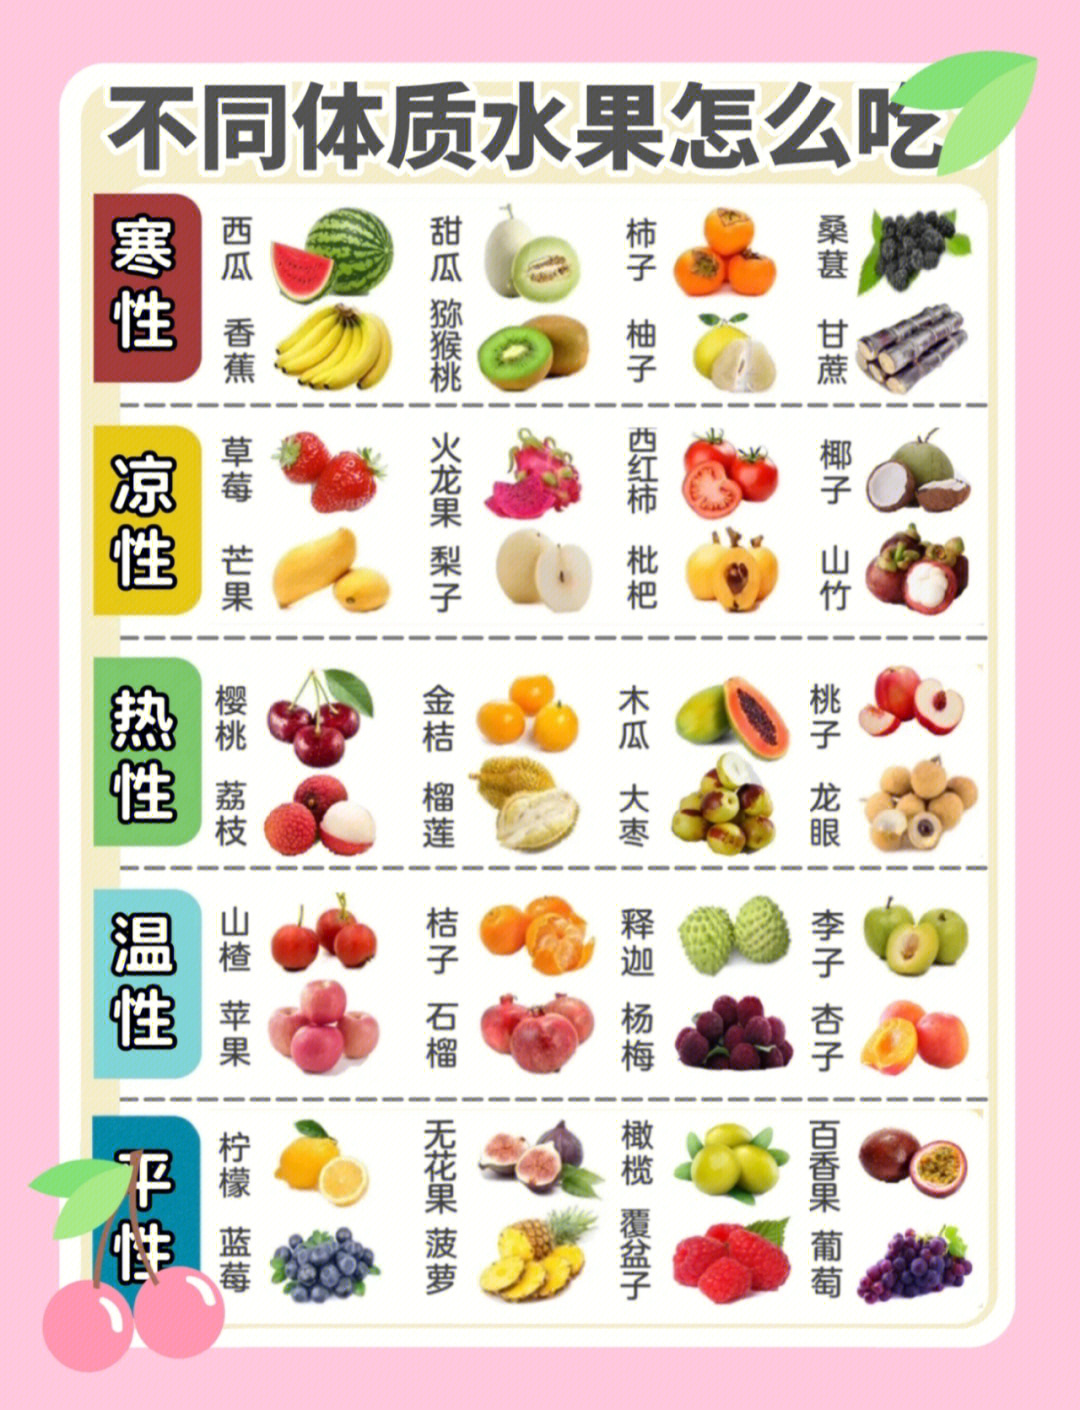 水果也分凉热属性60吃对健康加倍606060